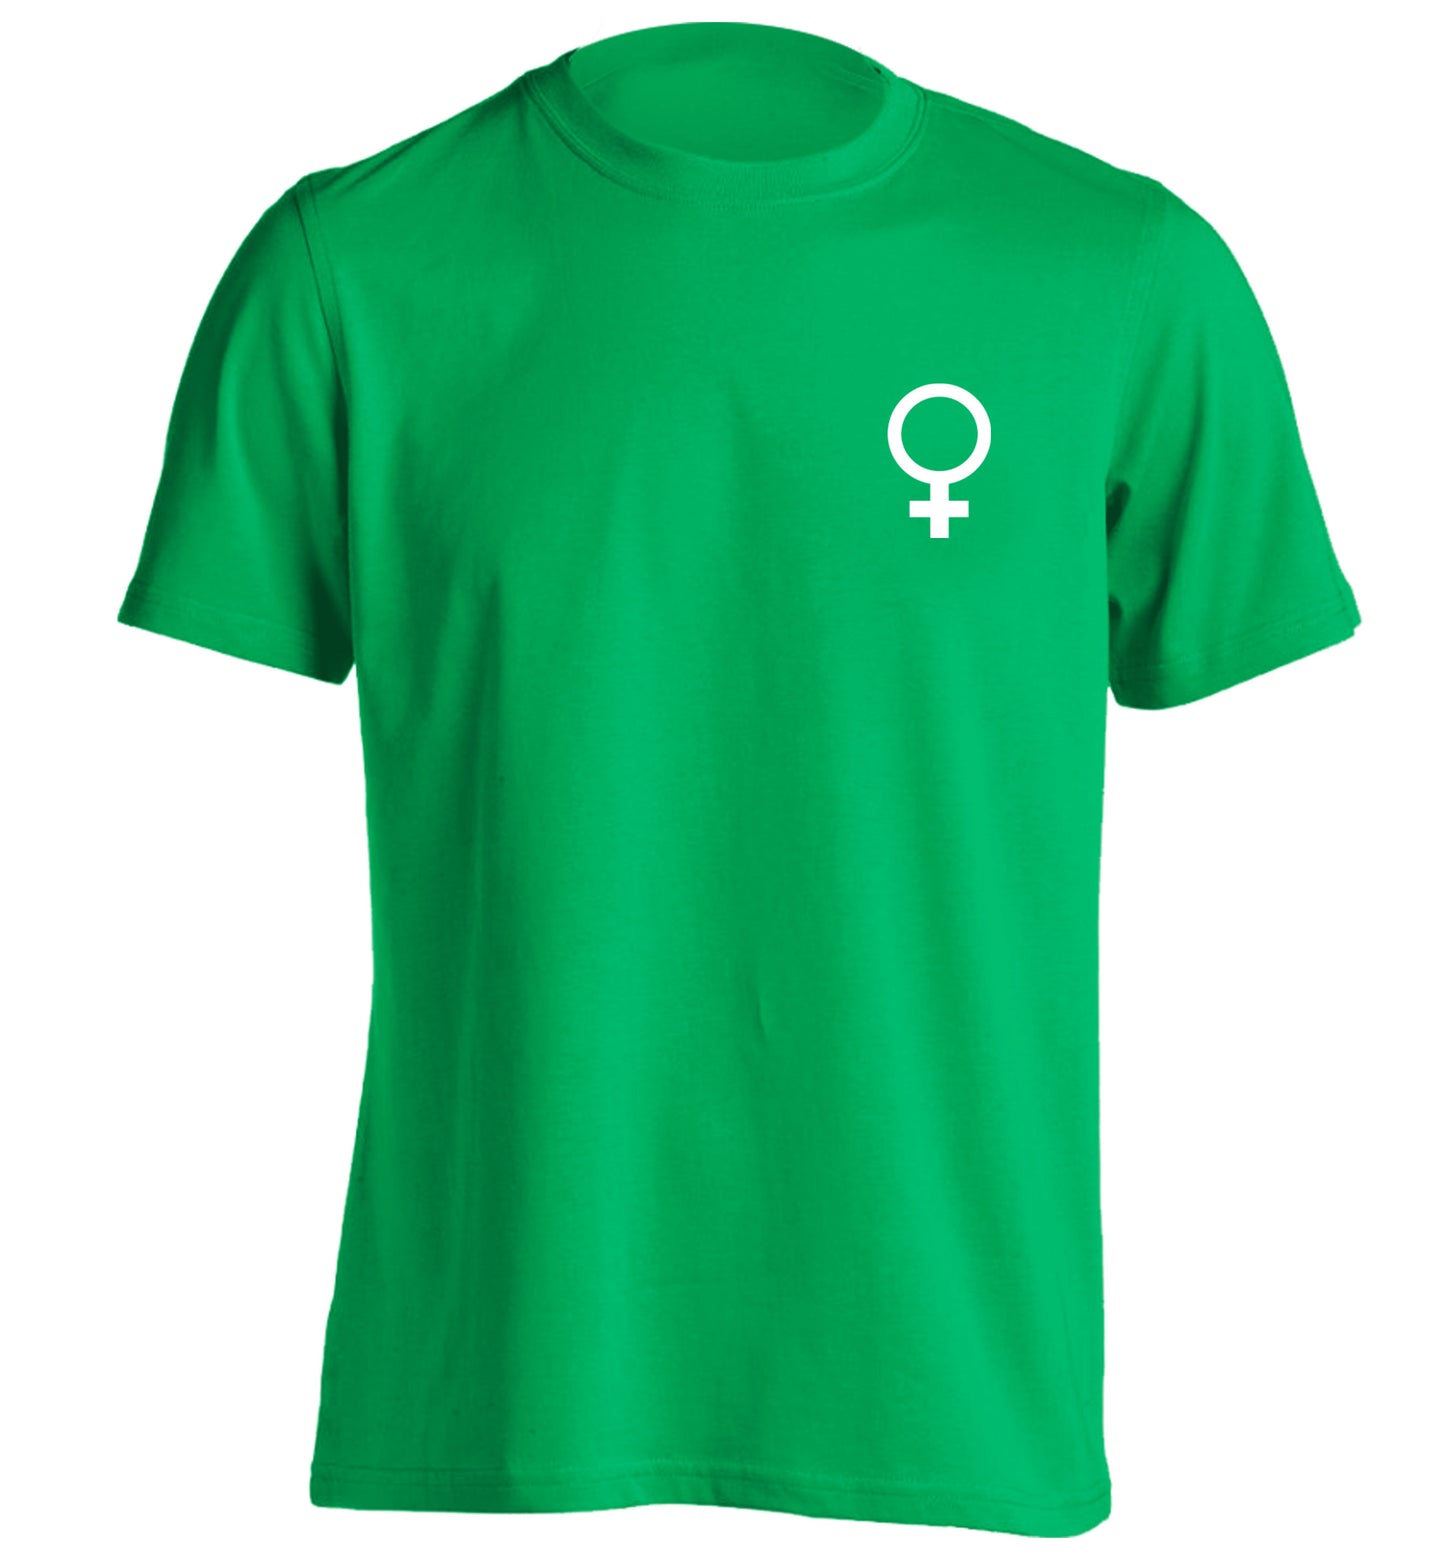 Female pocket symbol adults unisex green Tshirt 2XL